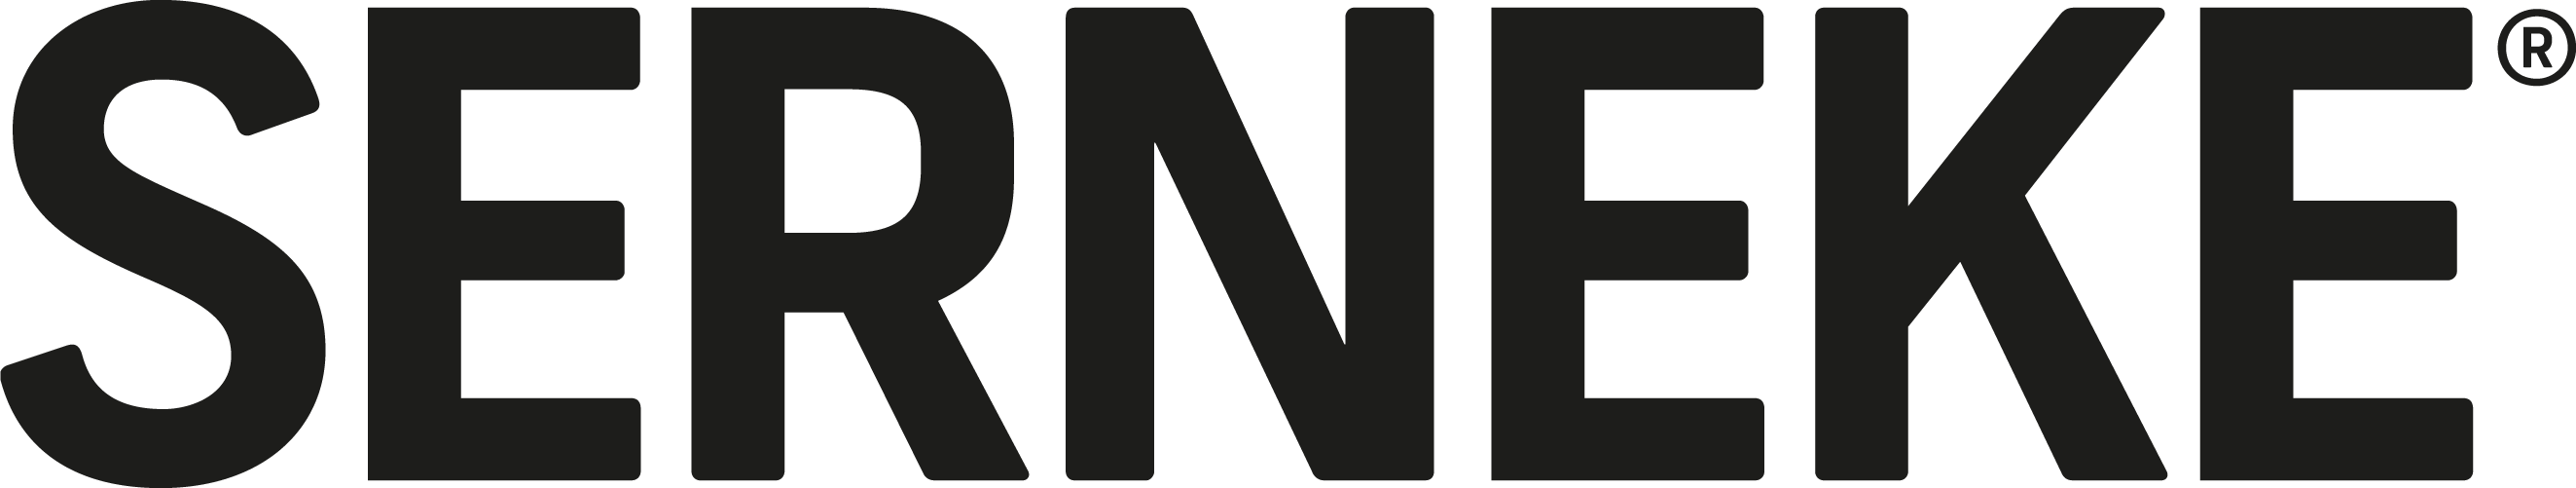 Logotyp för Serneke